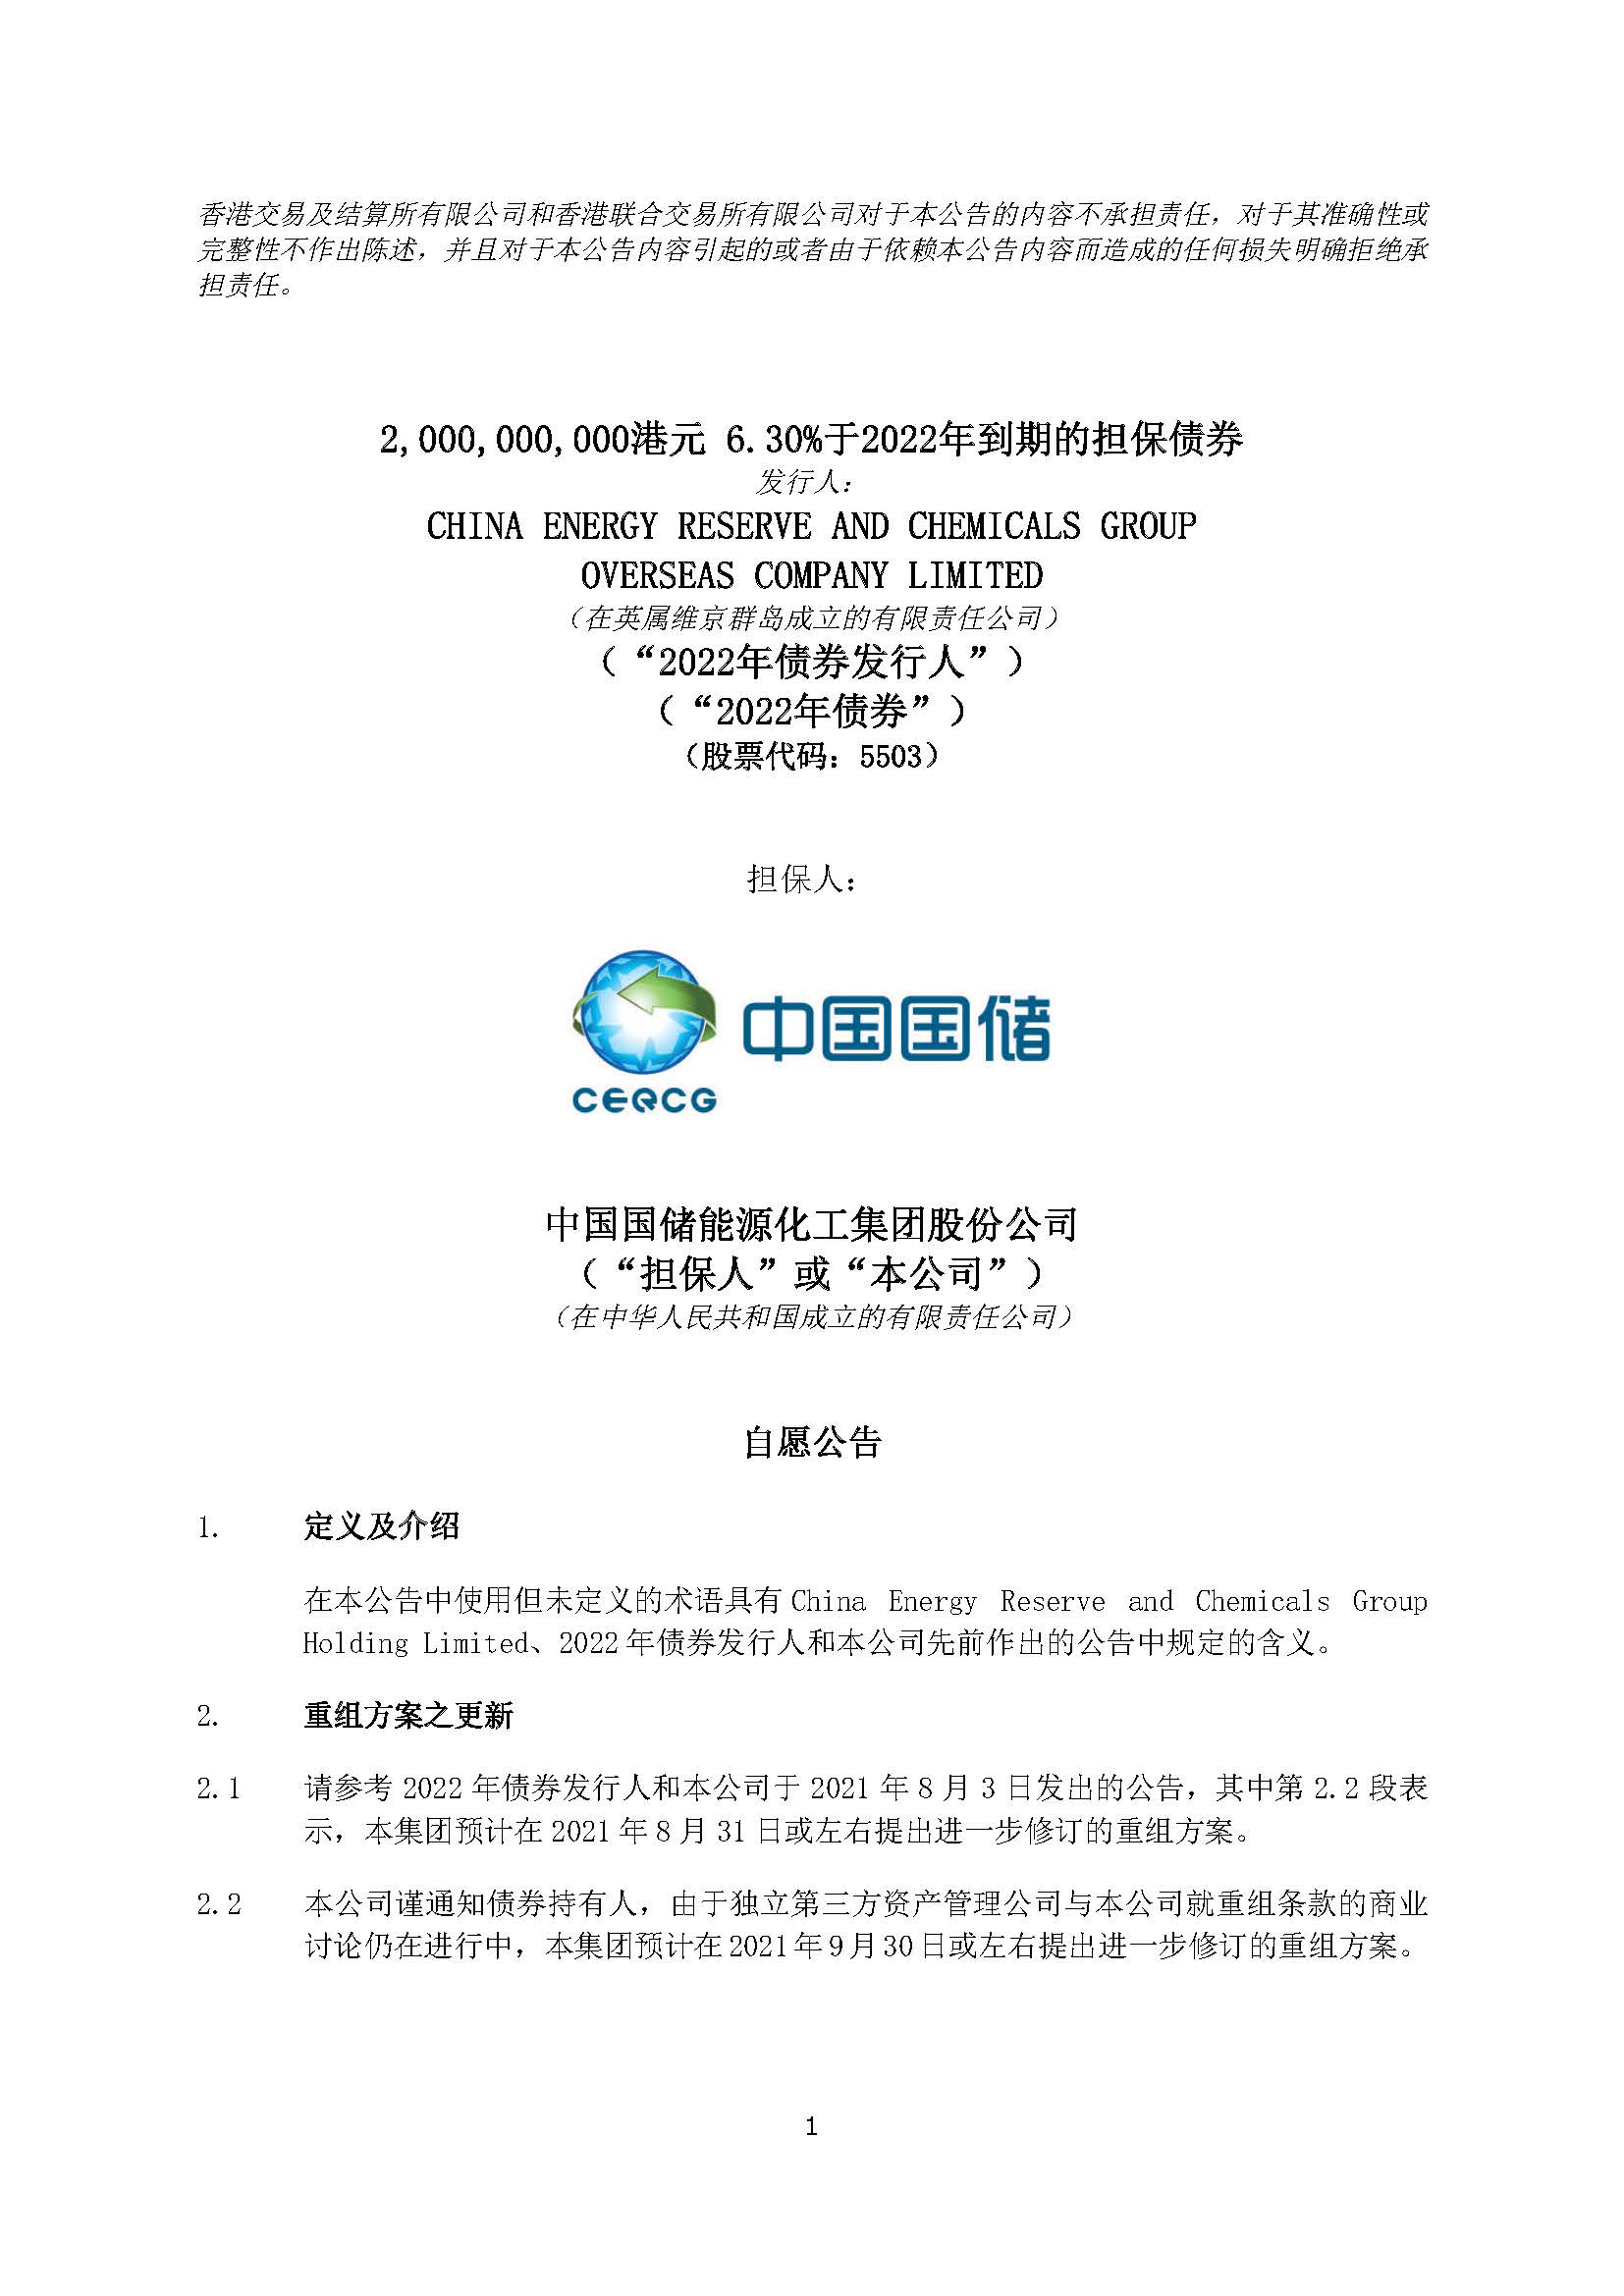 CHN_CERCG - HKEx Announcement (3 September 2021)(244861638.2)_页面_1.jpg